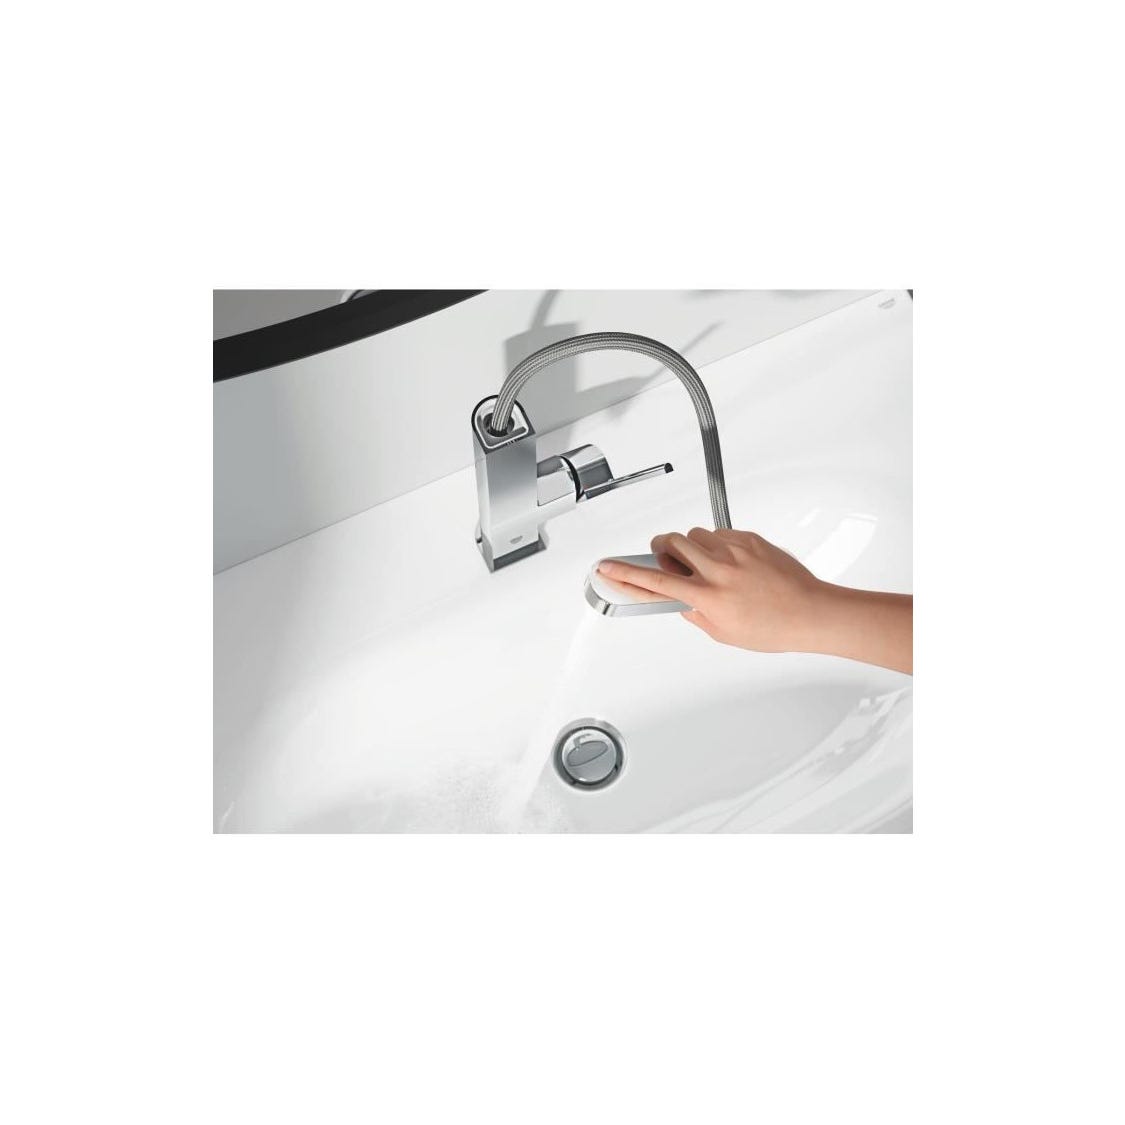 GROHE Mitigeur lavabo monocommande Plus 23844003 - Bec L extractible - Limiteur de température - Economie d'eau - Chrome - Tail 1